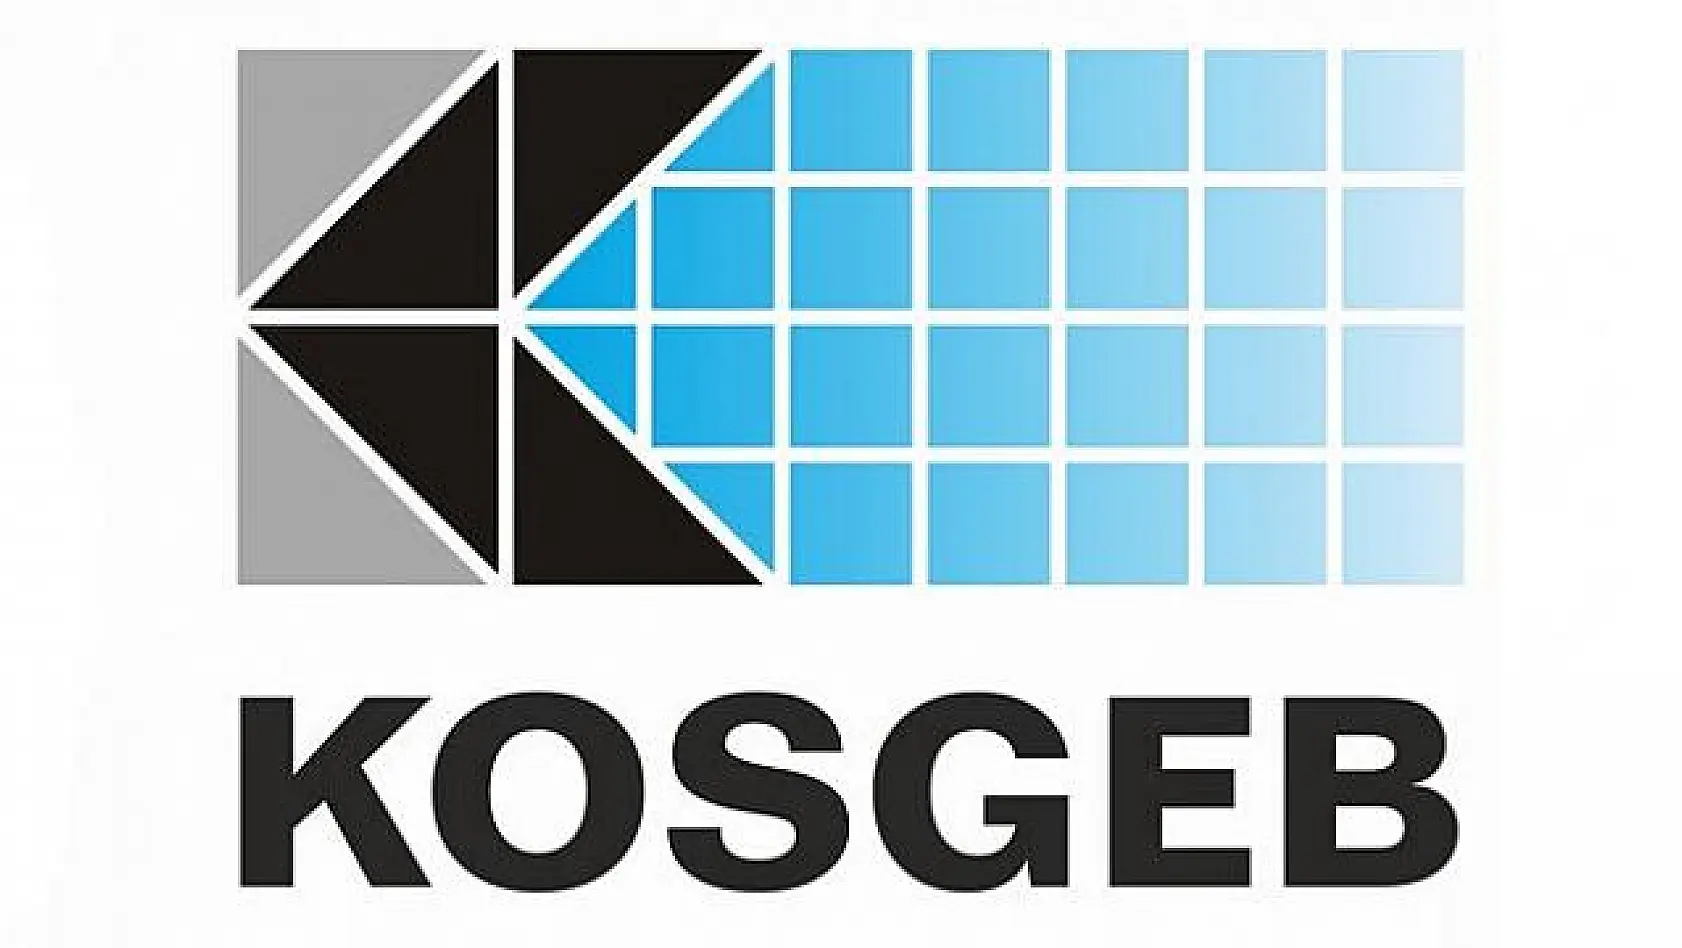  KOSGEB yüksek teknolojili ürünlere 5 milyon TL destek sunacak 